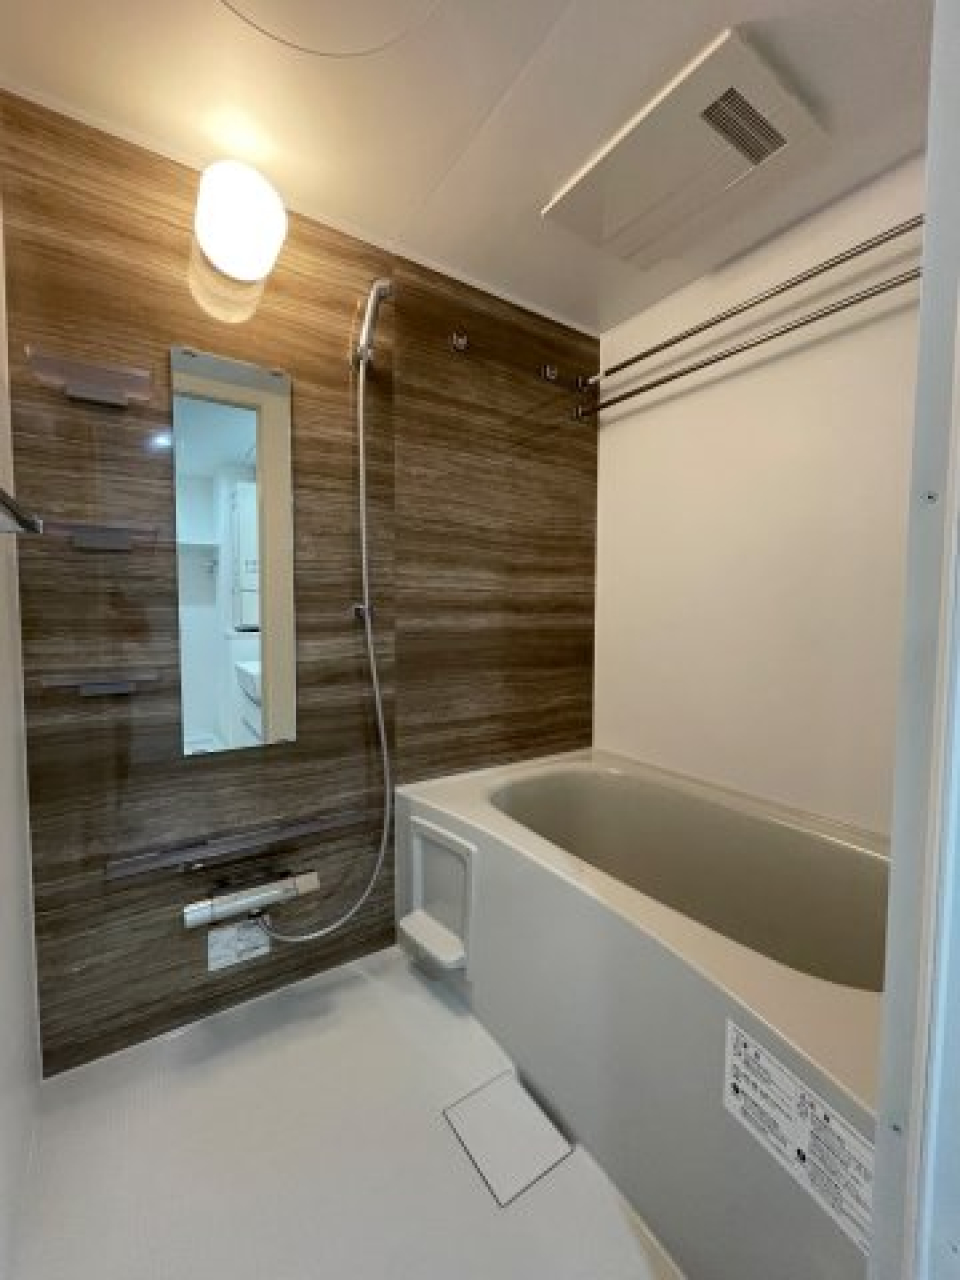 木目調のパネルが導入された浴室。